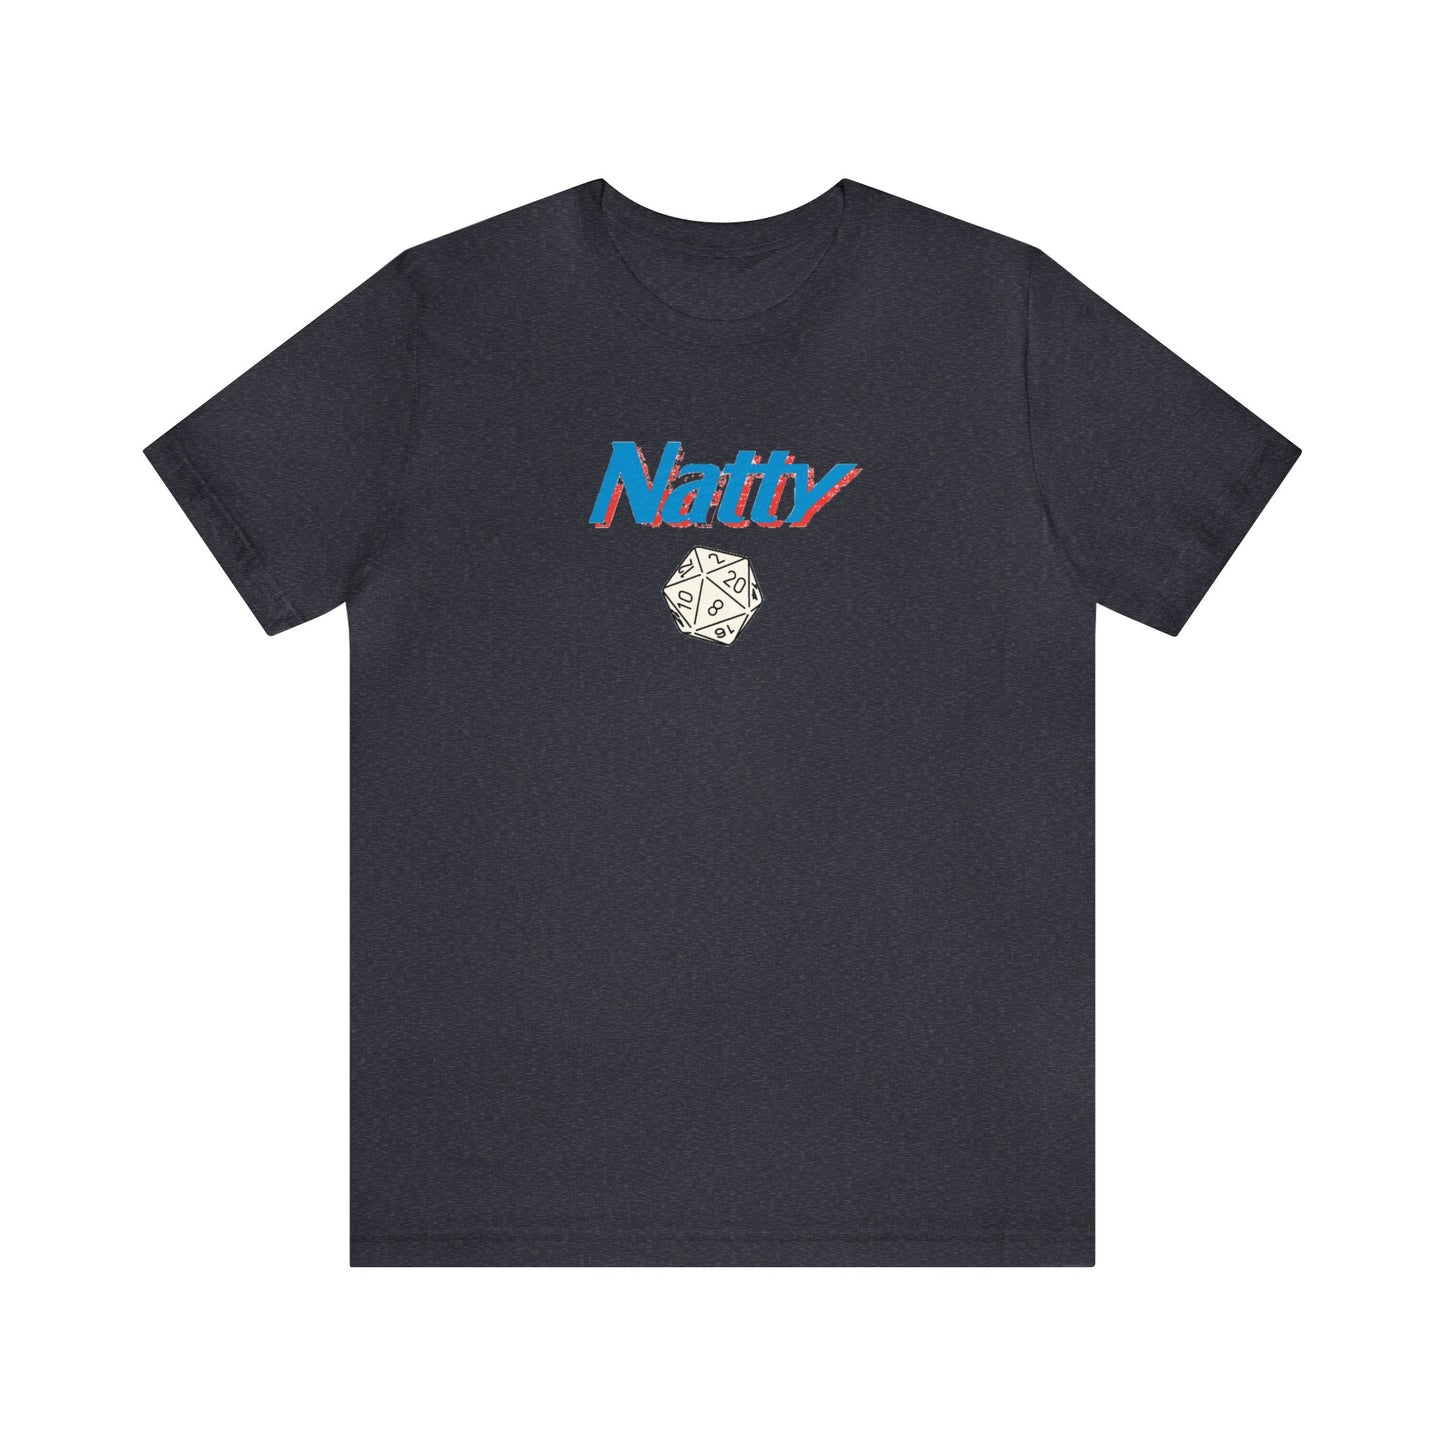 Natty 20 Unisex Jersey Short Sleeve Tee